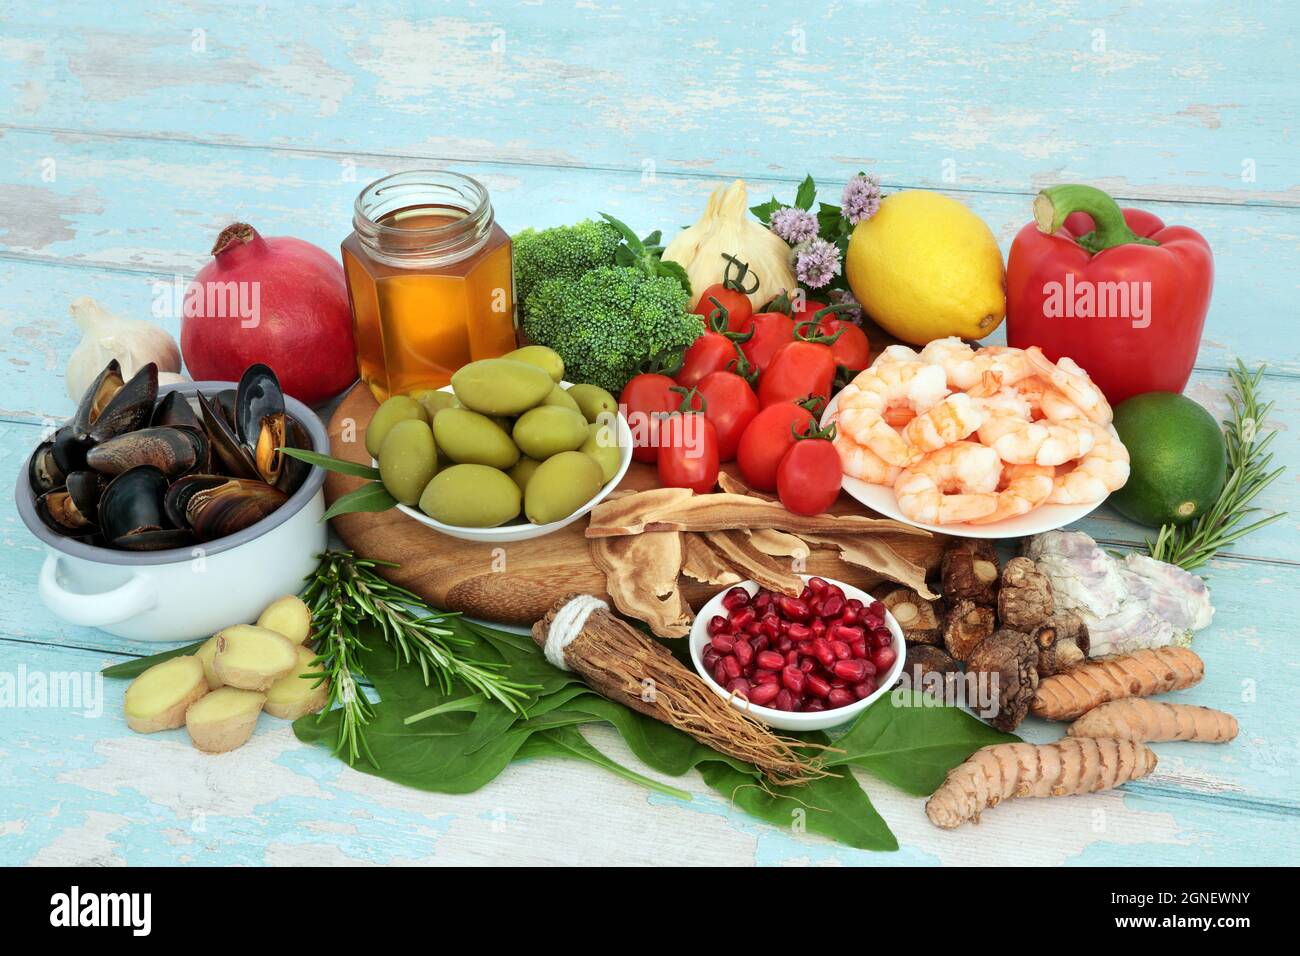 Cibo sano per rafforzare il sistema immunitario con frutti di mare, verdure, frutta, miele, erbe e spezie. Alimenti per la salute molto alti in antiossidanti, antocianine. Foto Stock